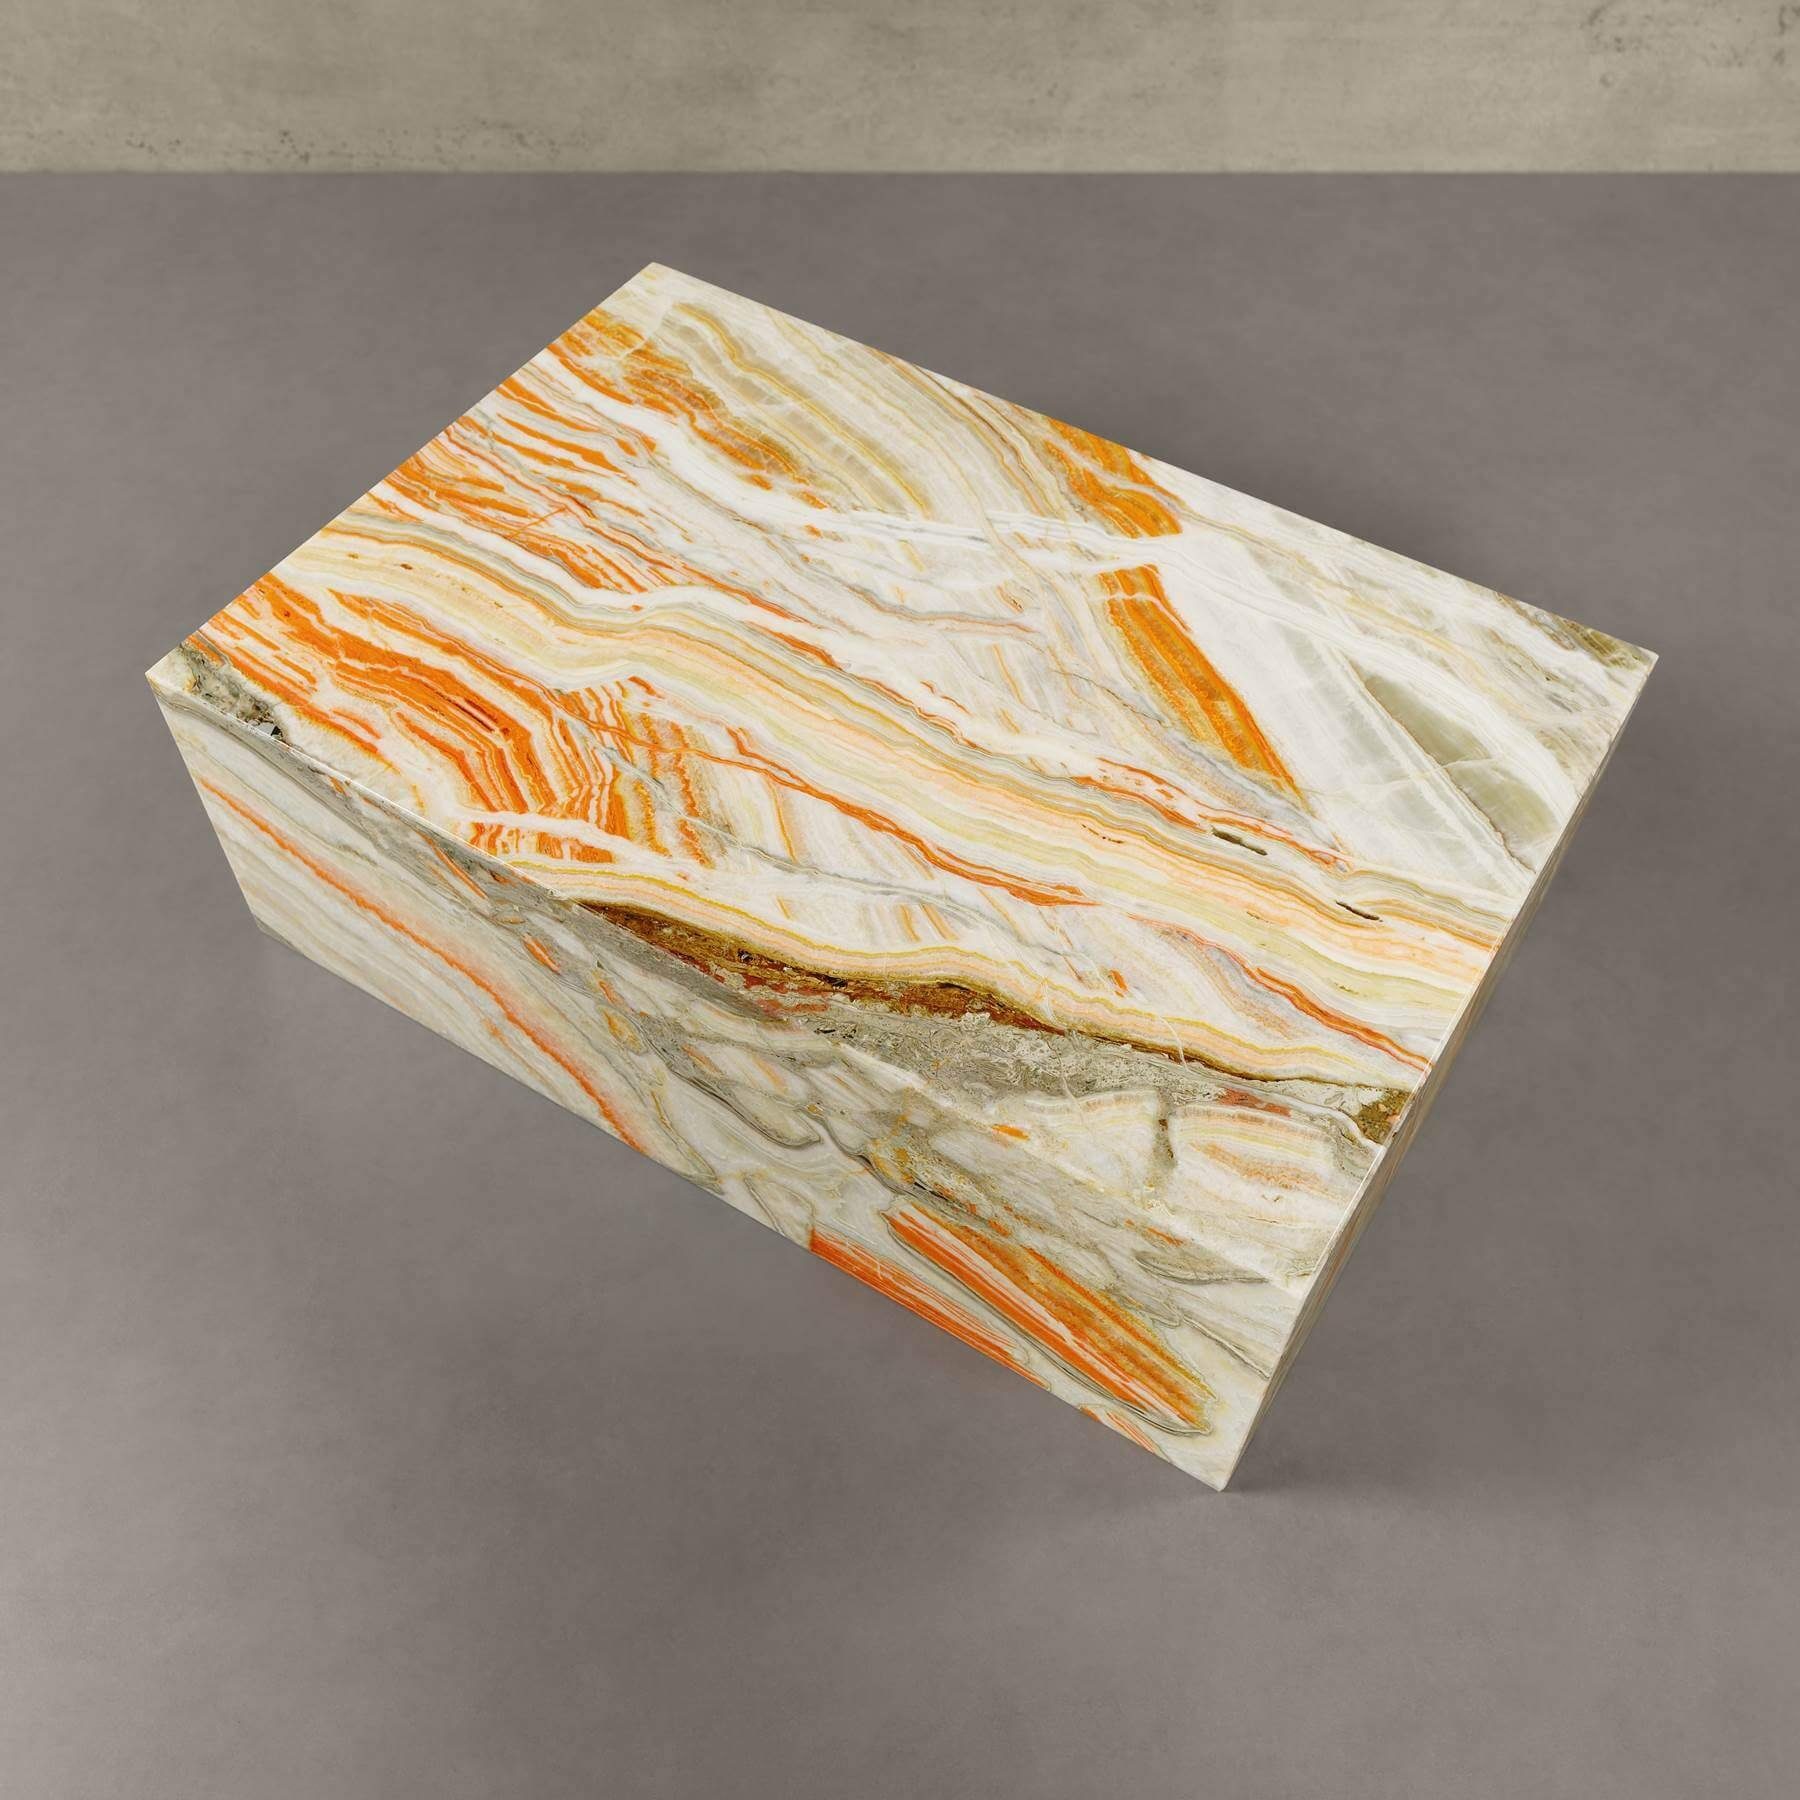 90x60x30cm echter Marmor Ablagetisch MAGNA Onyx MARMOR, Couchtisch Atelier ASPEN ECHTEM eckig, Multicolor Tisch, Beistelltisch mit